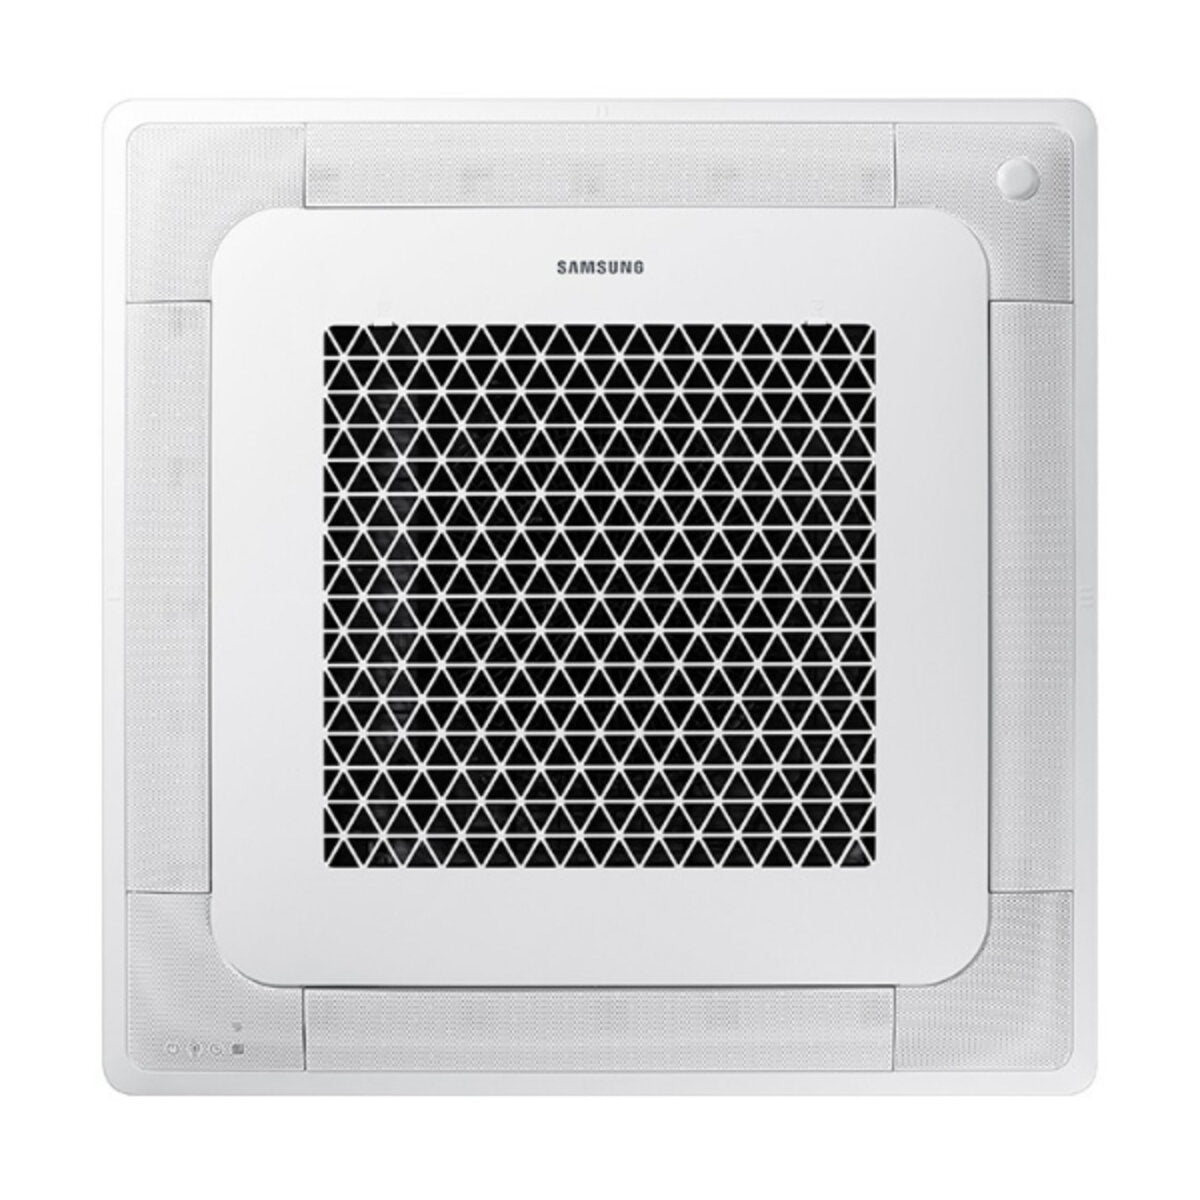 Samsung Air conditioner Cassette Windfree 4 ways trial split 9000 + 9000 + 12000 BTU inverter A +++ outdoor unit 5.2 kW